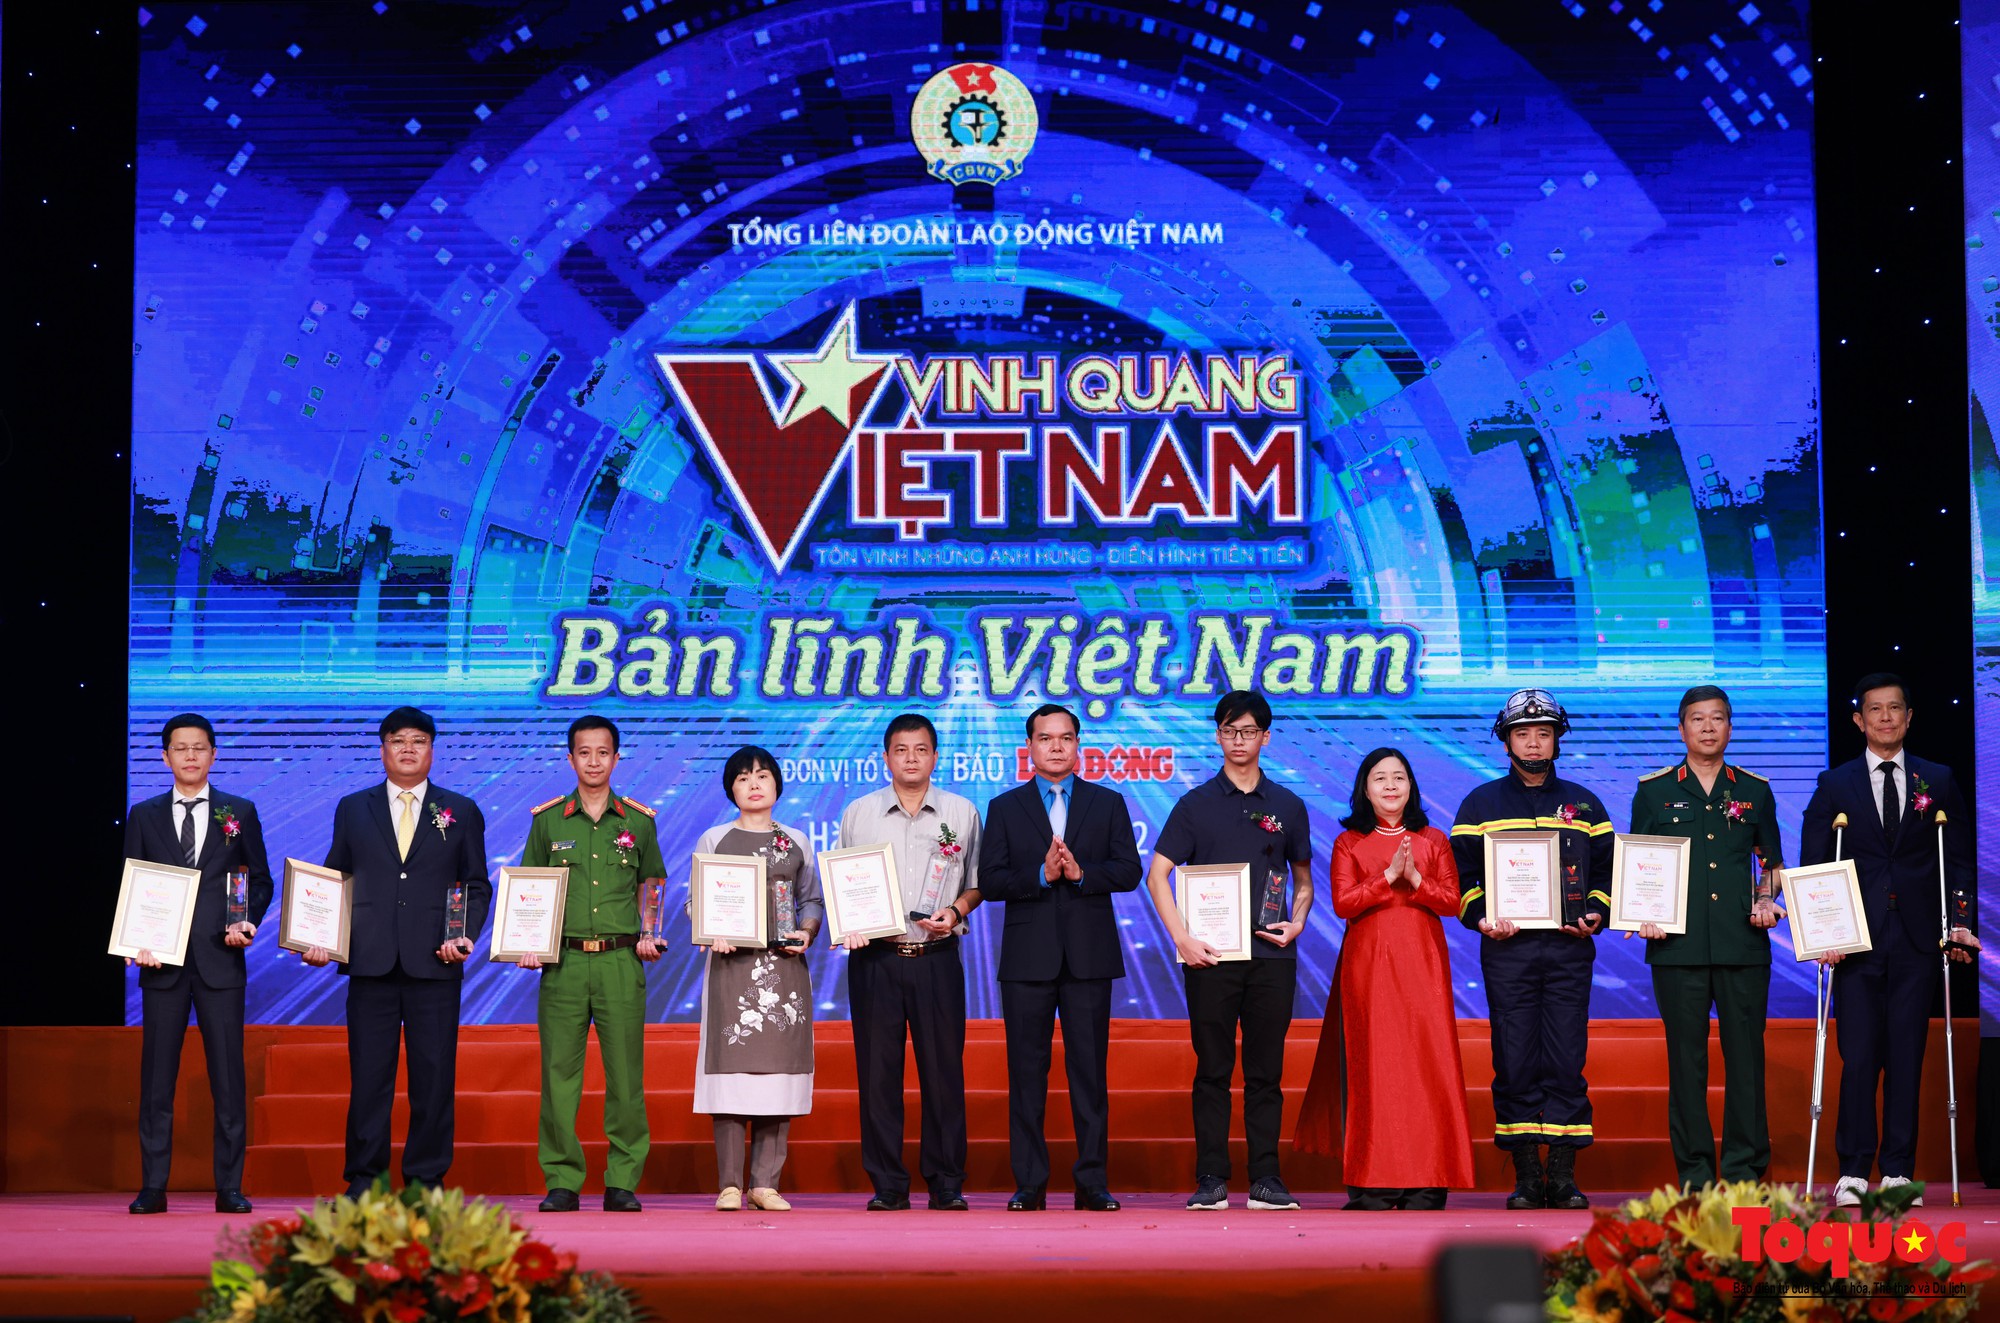 Vinh quang Việt Nam năm 2022: Vinh danh các chiến sĩ PCCC Cầu Giấy đã hi sinh khi làm nhiệm vụ  - Ảnh 6.